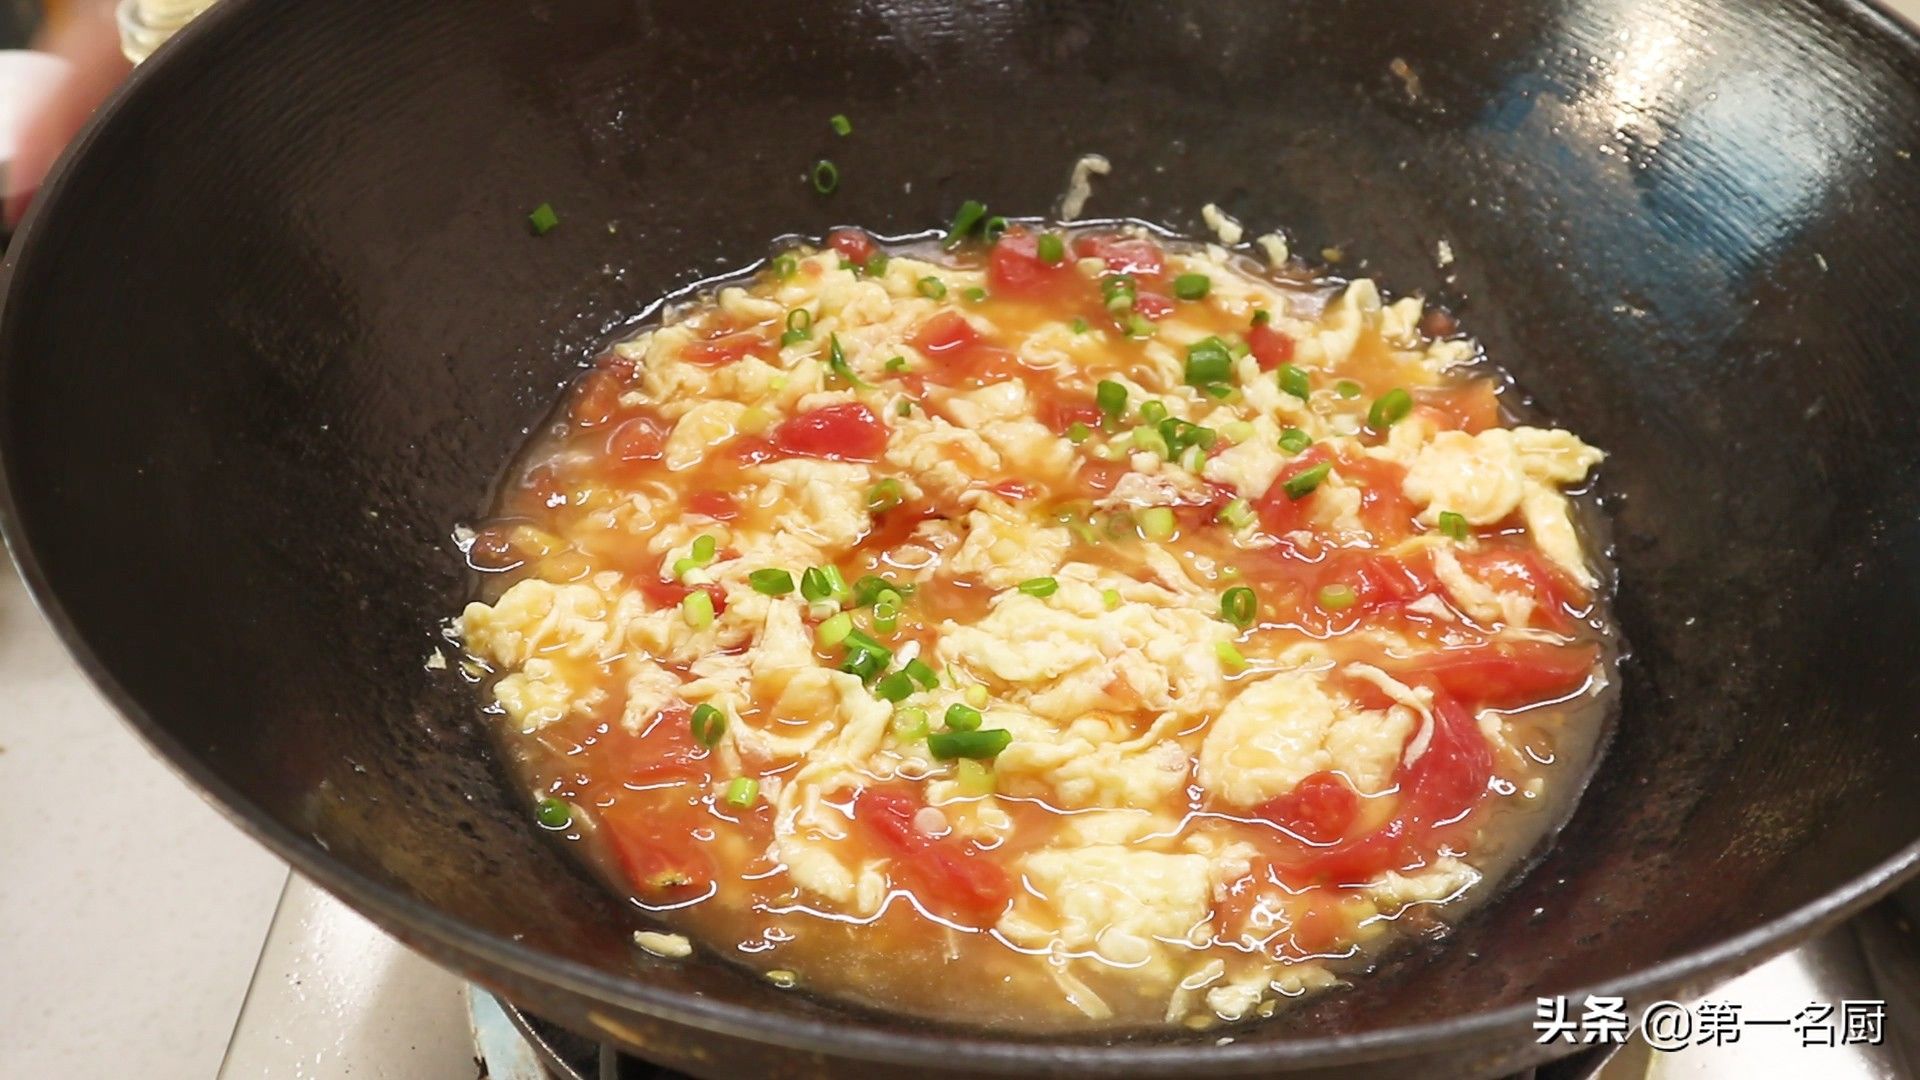 番茄炒蛋盖浇饭（西红柿鸡蛋盖浇饭”的家常做法）-第11张图片